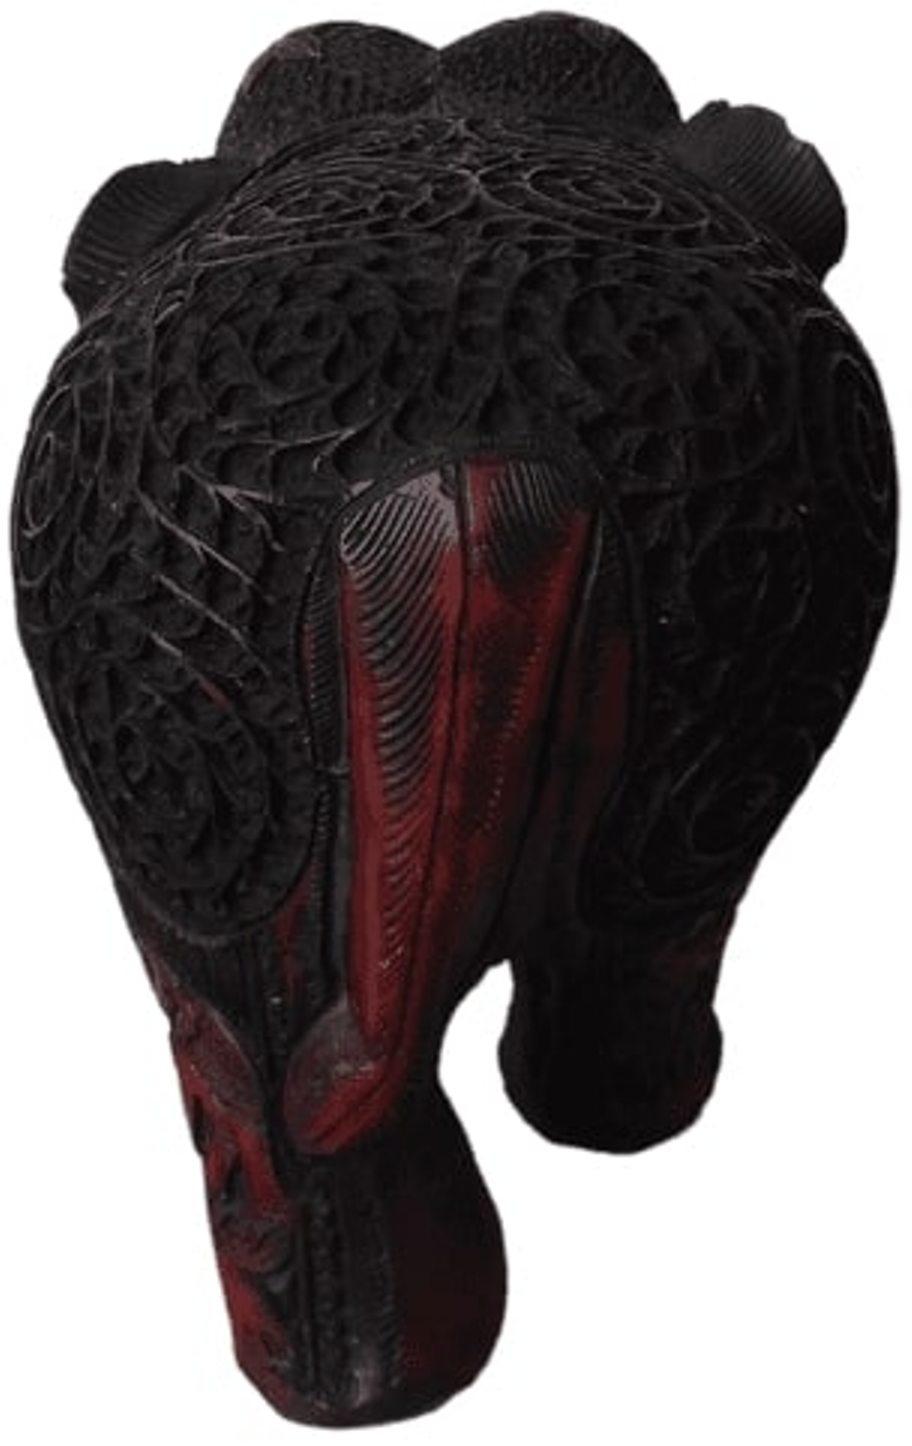 Artefacts
Sculpture d'éléphant
Résine
L 10 x H 7.5 x D 6 pouces